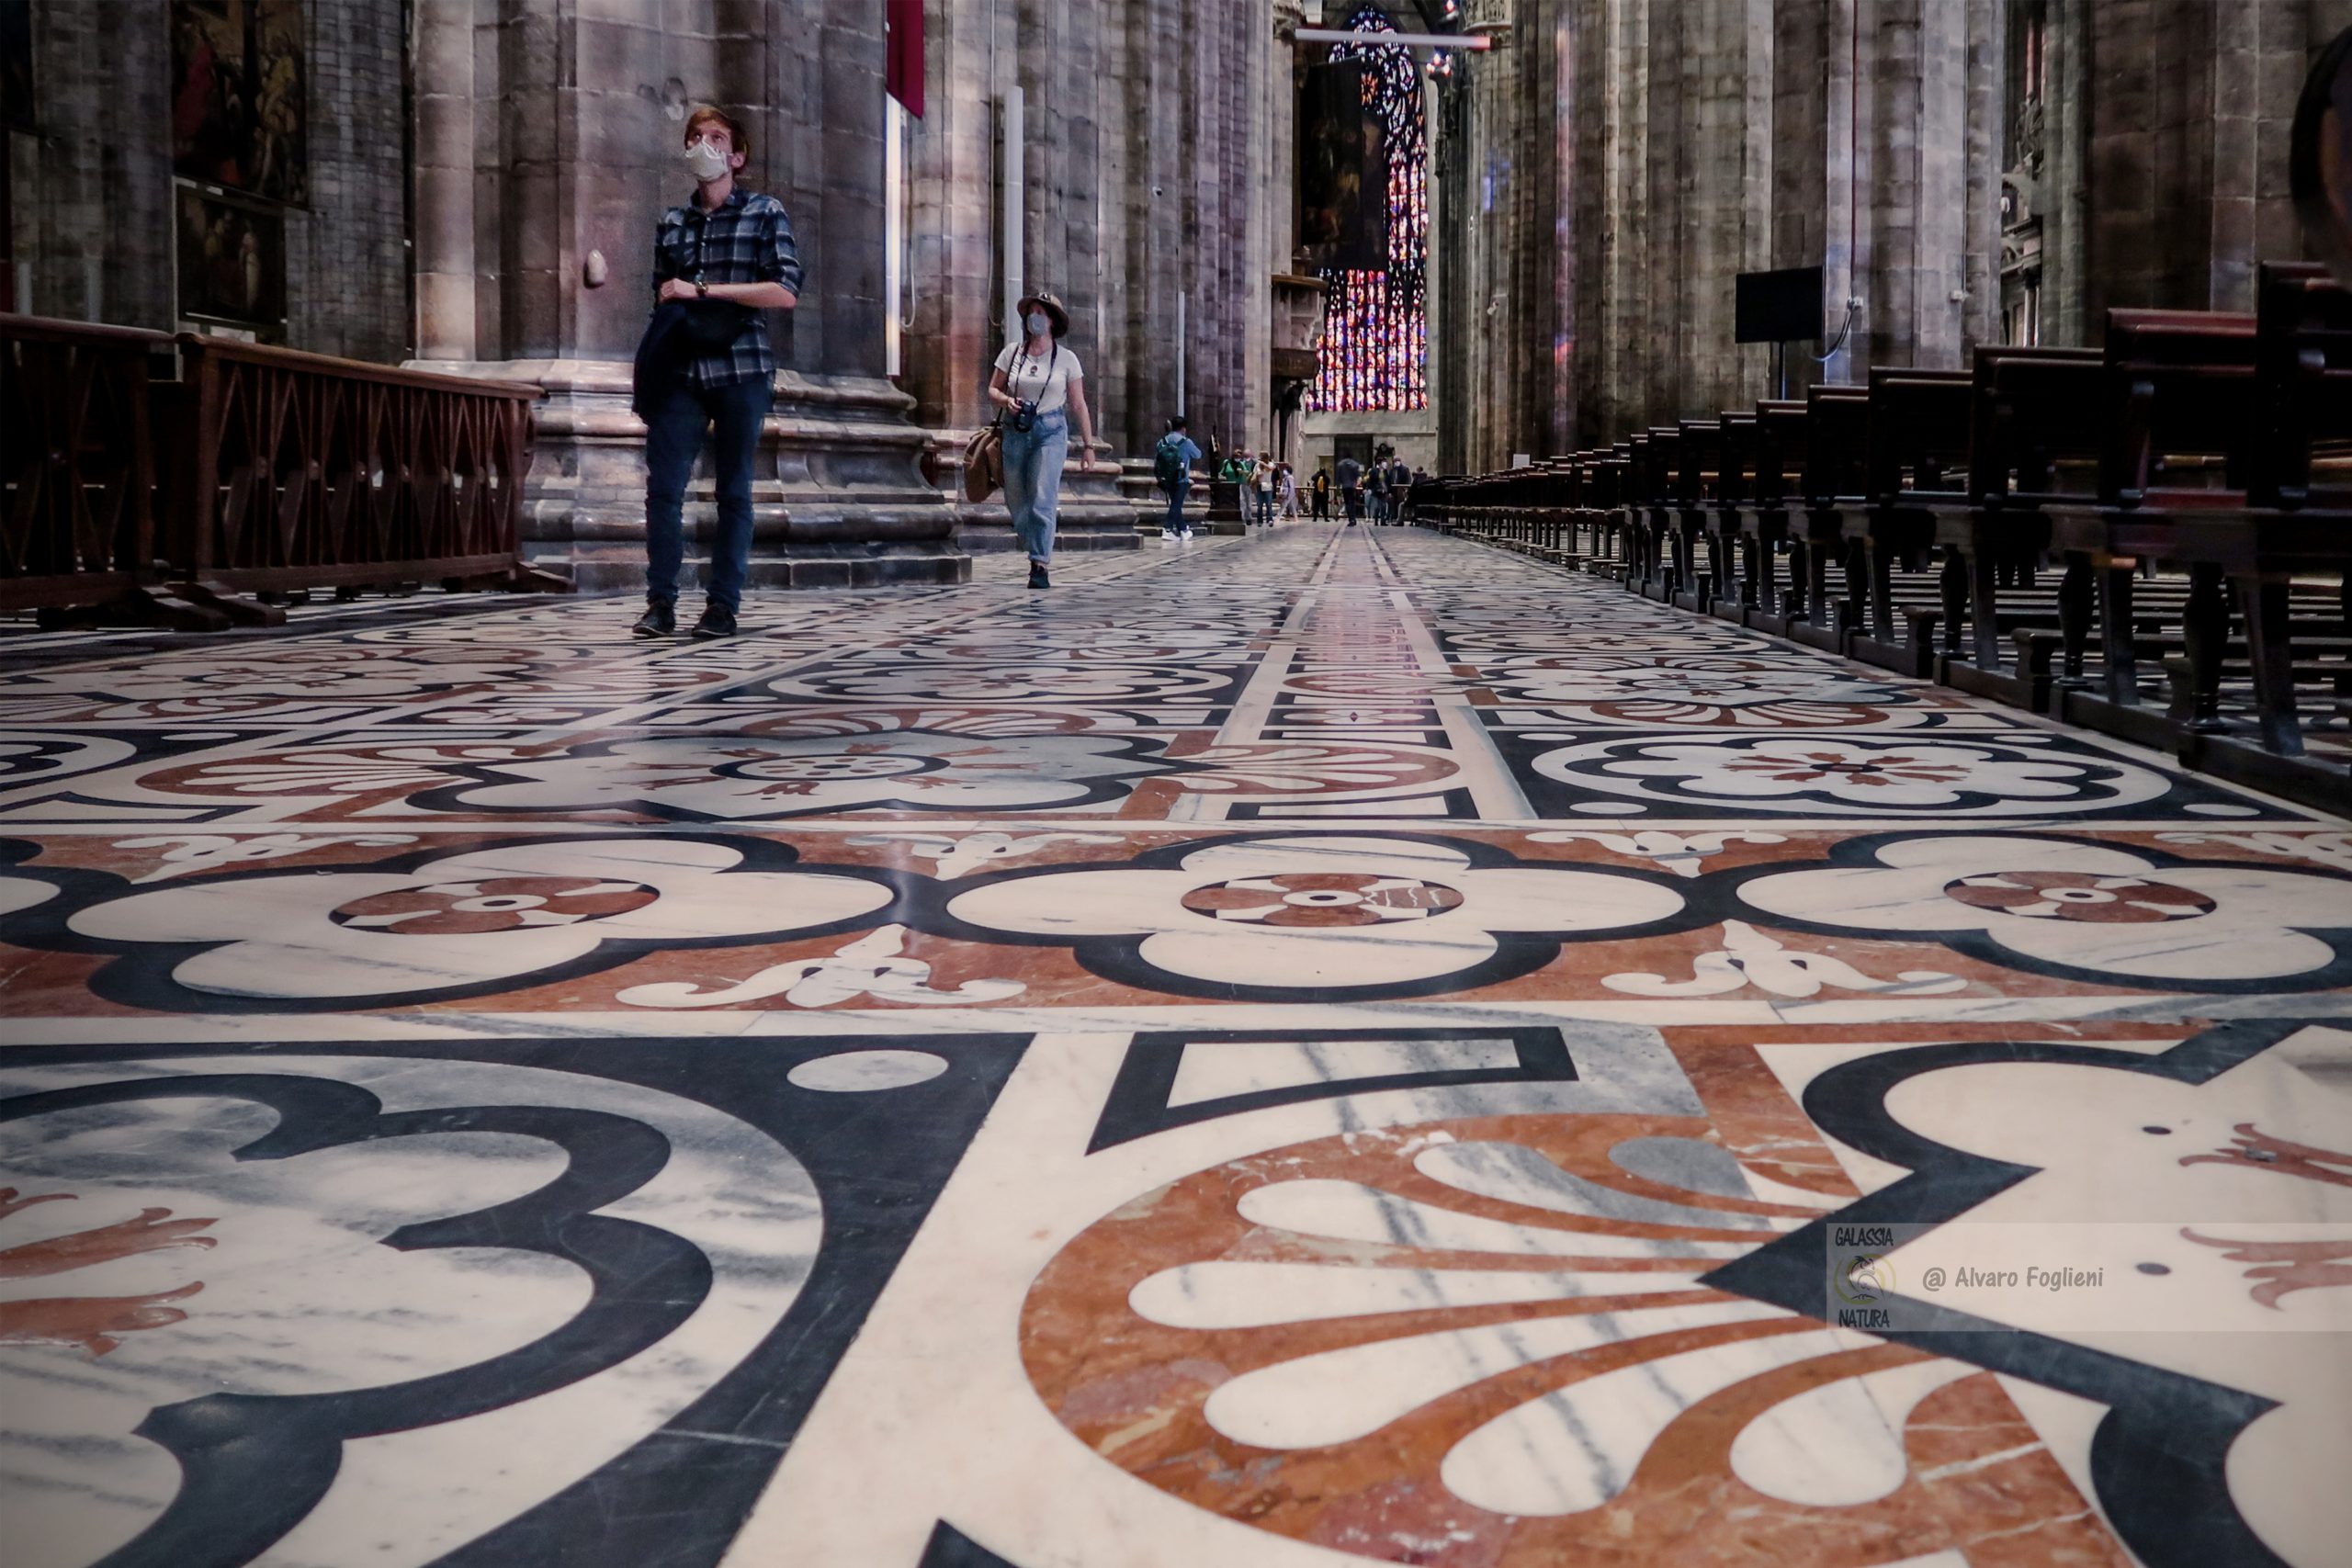 Pavimenti Marmorei del Duomo di Milano, Arte da Camminare e Fotografare pavimenti; Duomo Milano, fotografia artistica, marmi colorati, disegni floreali, tecniche fotografiche.